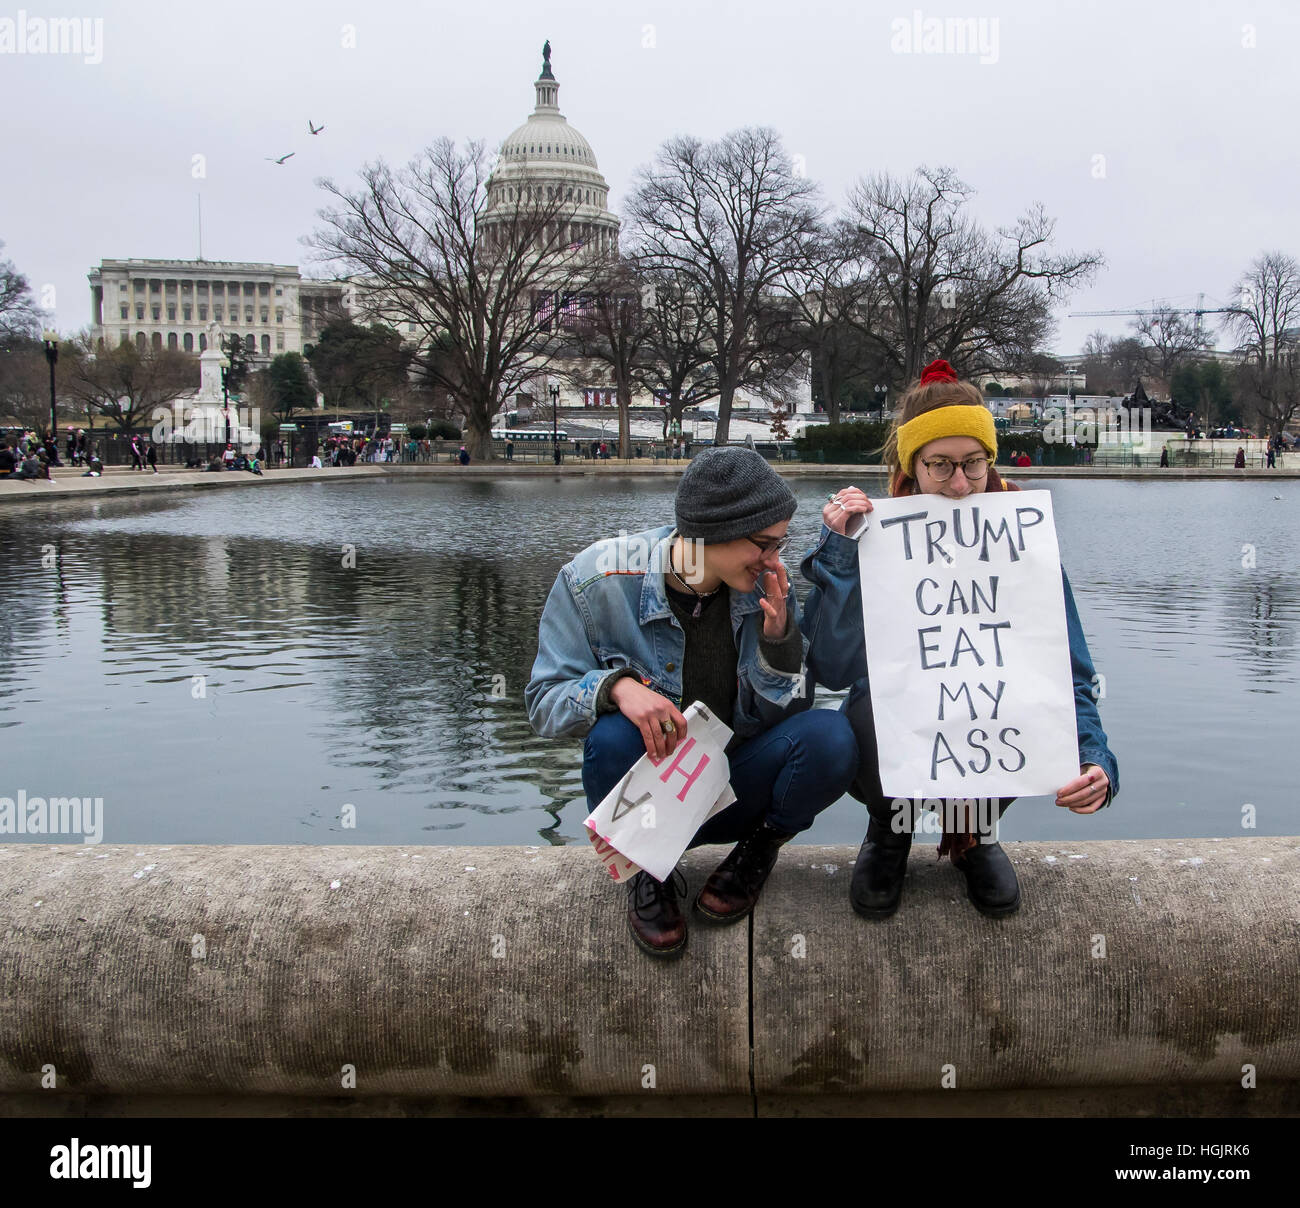 Washington, DC, USA. 21 Jan, 2017. Marche des femmes à Washington, D.C. Crédit : Darryl Smith/Alamy Live News Banque D'Images